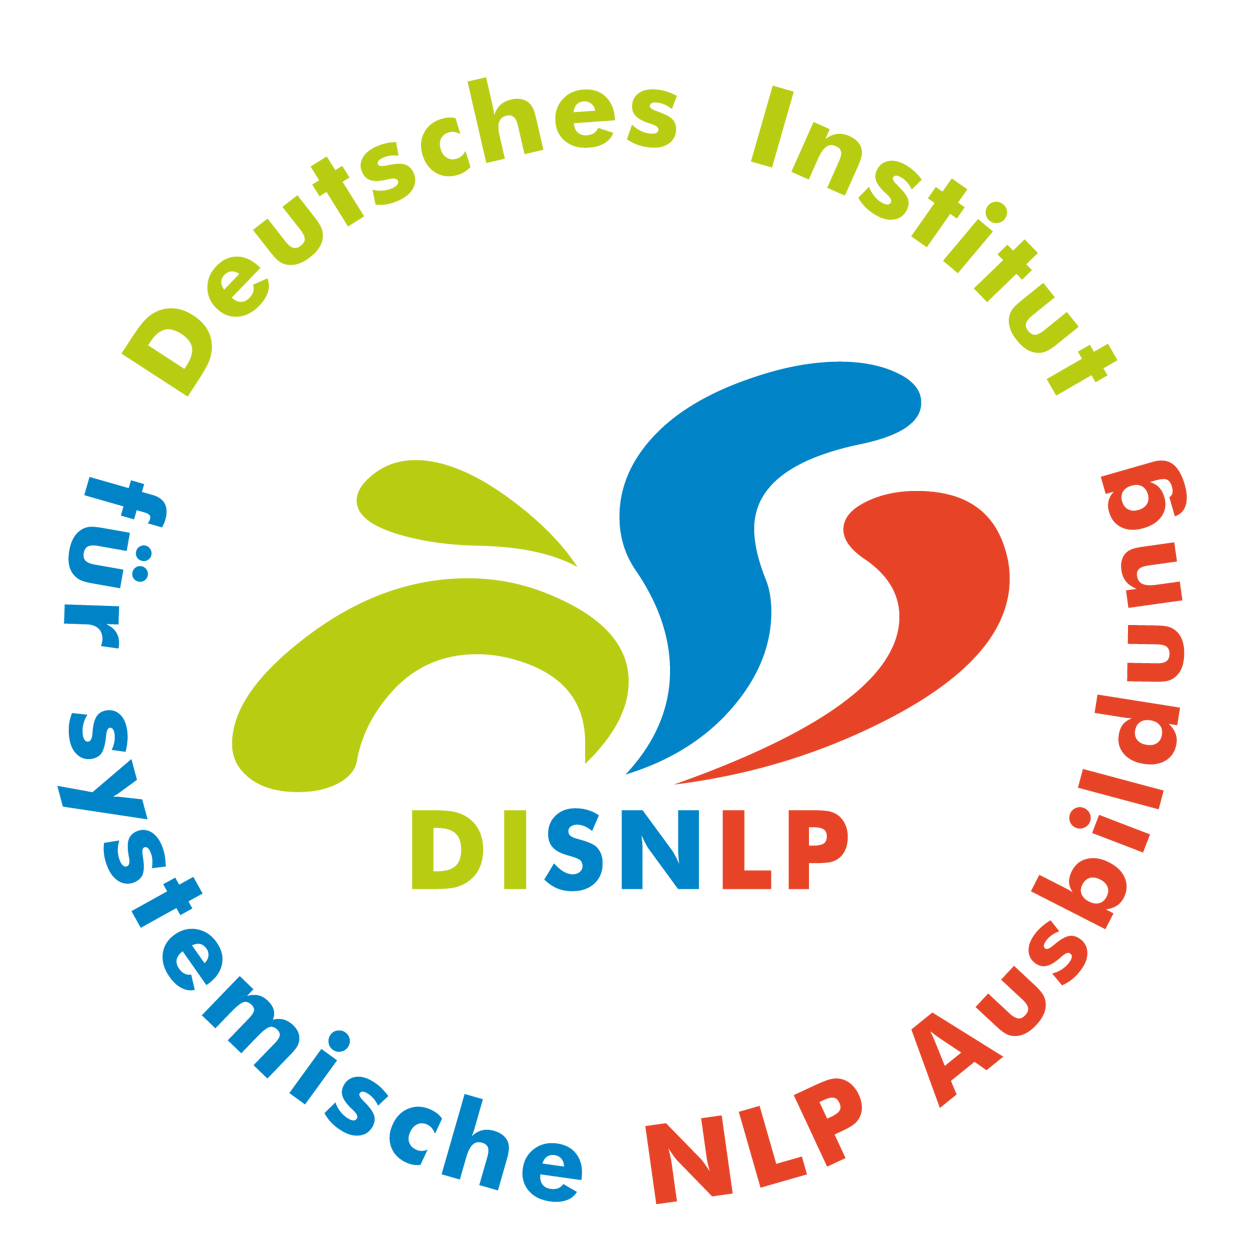 Seminar Selbstbewusstsein, Selbstvertrauen, Selbstwert, Selbstsicherheit stärken Koblenz Pfalz mit NLP Coaching Kurs für mehr Selbstbewusstsein